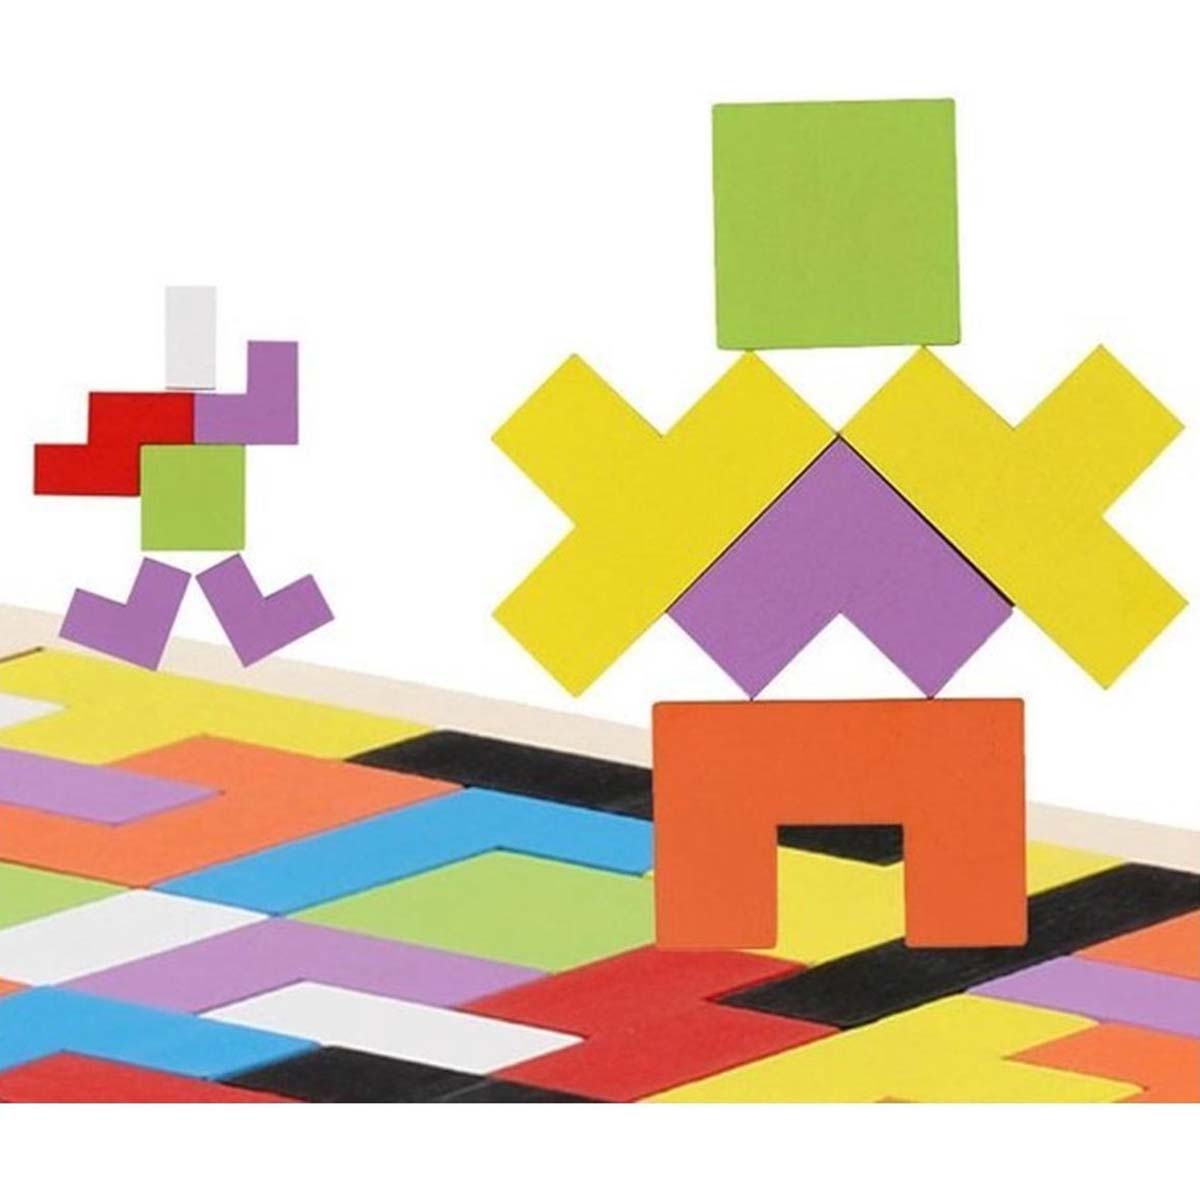 Ariko XL Puzzel | Tangram puzzel | Russian block puzzel | Houten puzzel | Tetris | Kinderpuzzel | Tetris puzzel | Houten speelgoed | 3 in 1